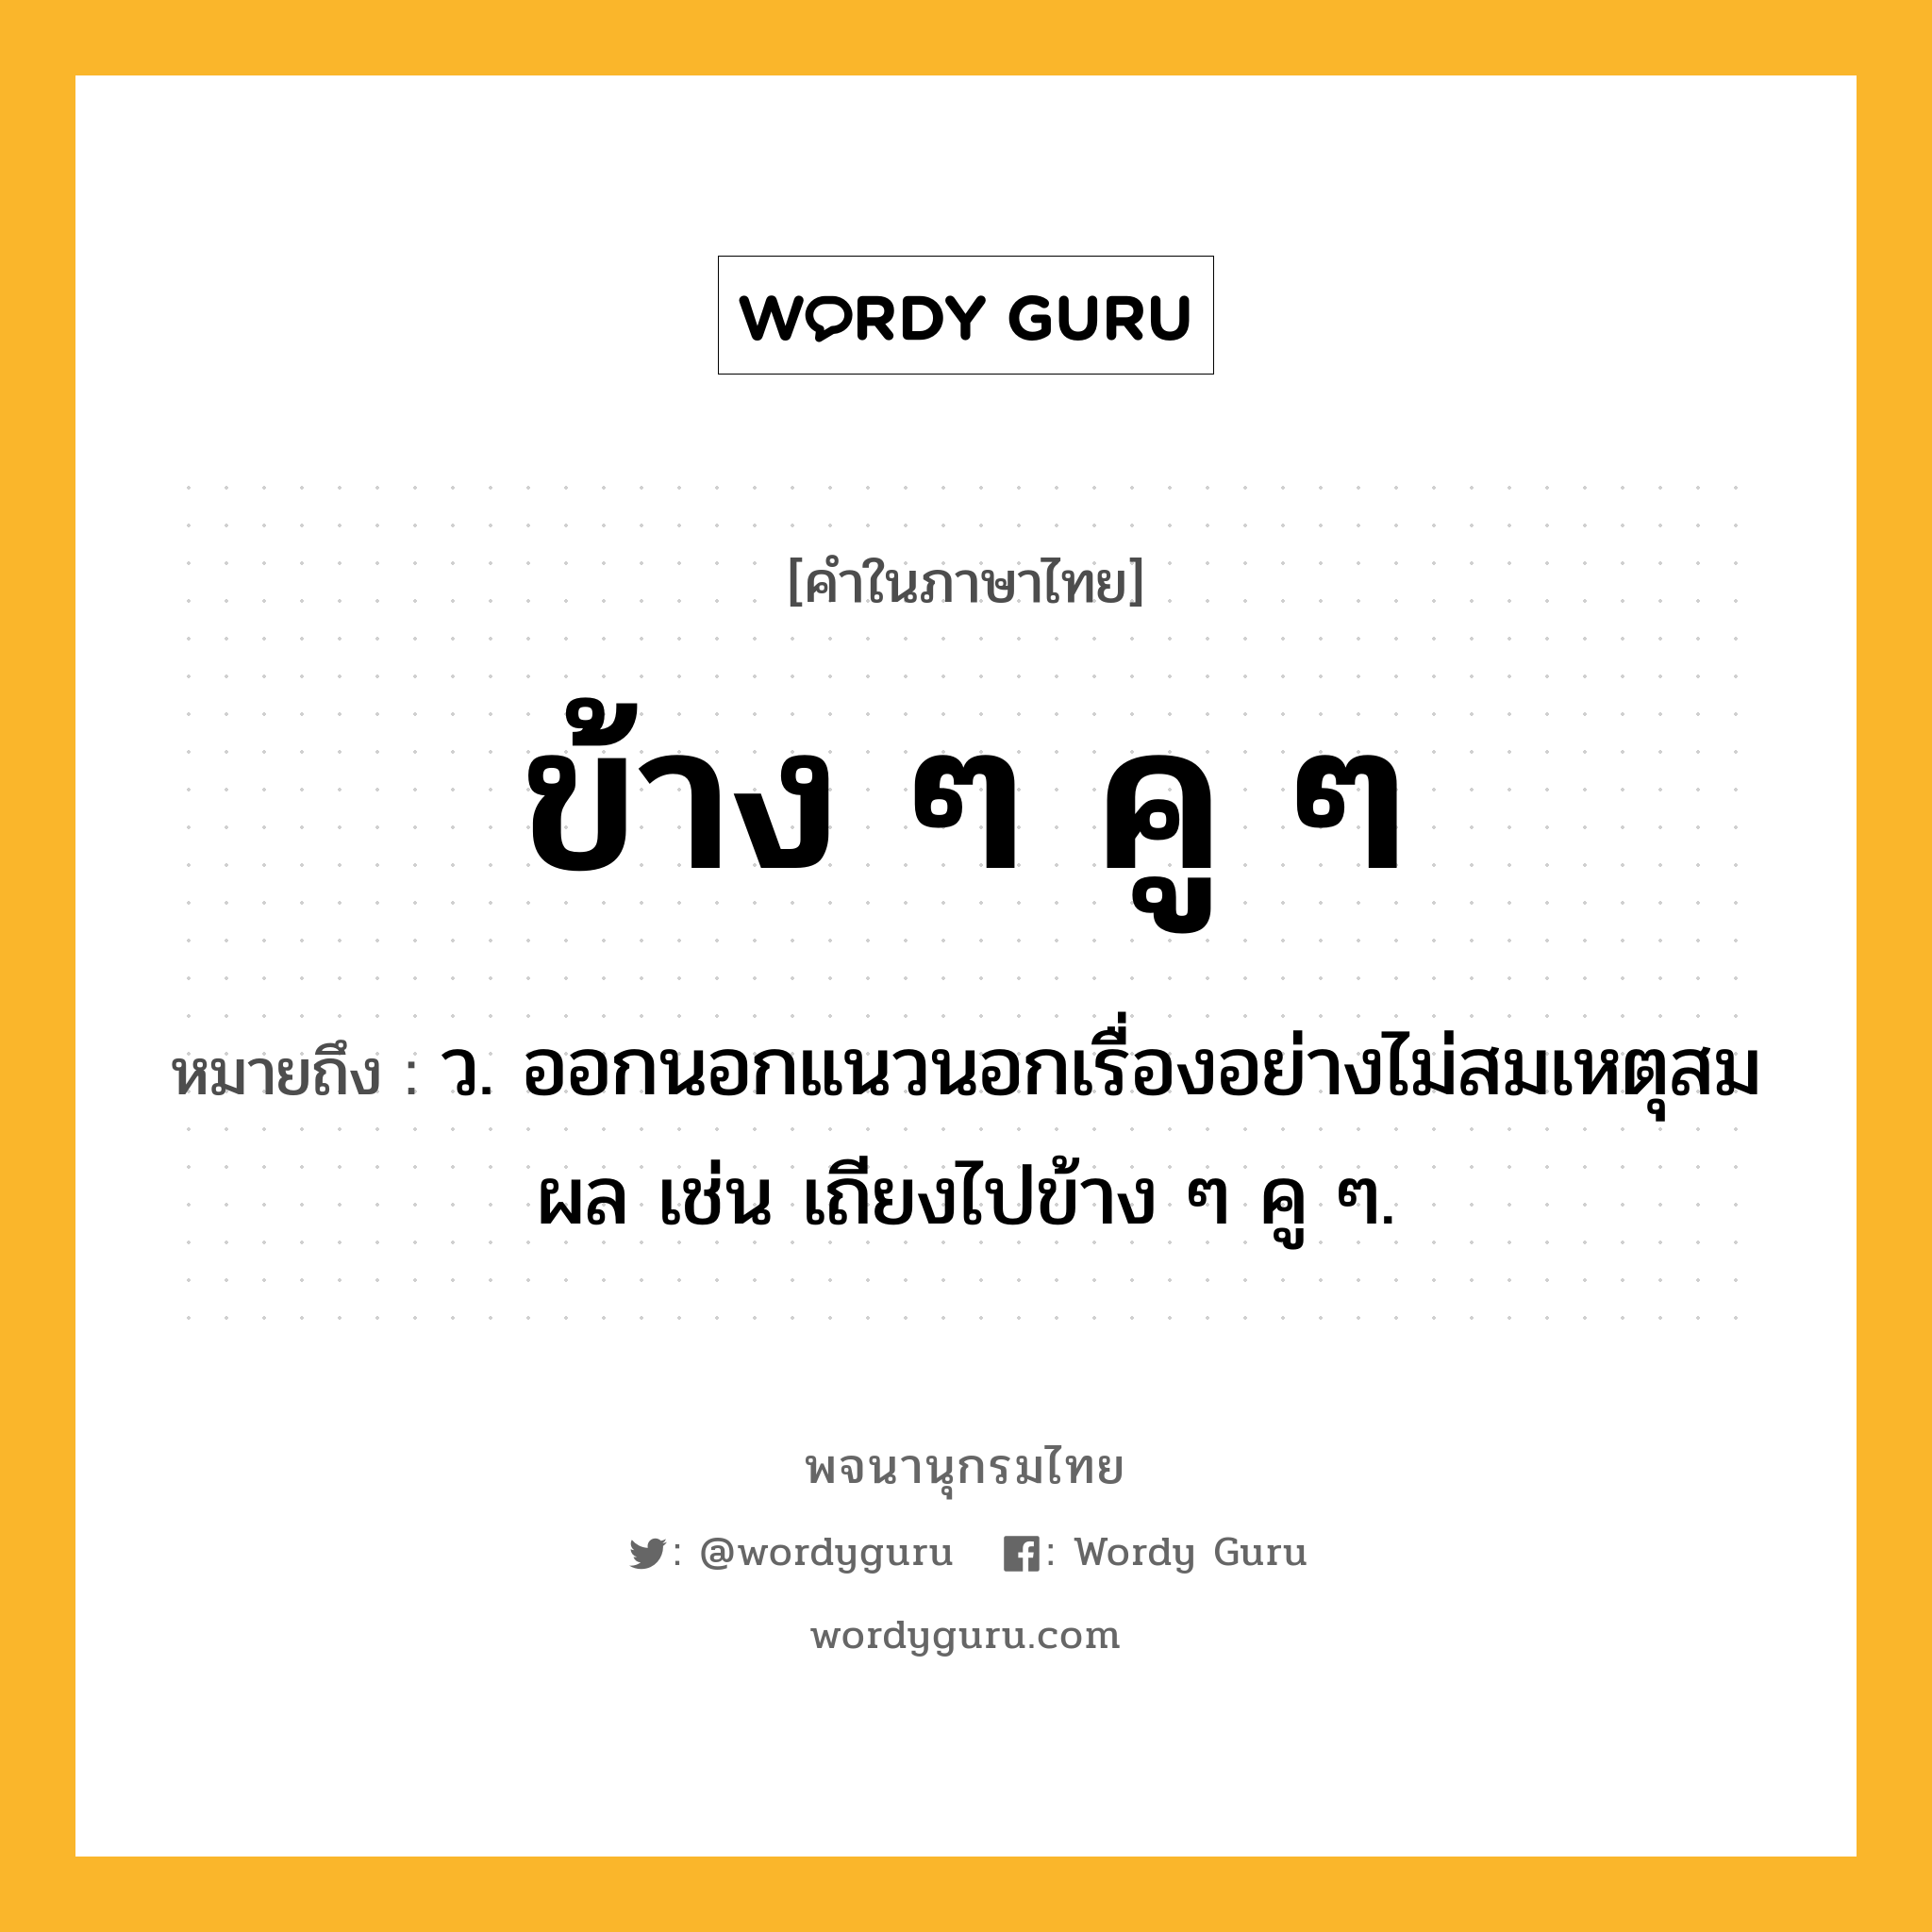 ข้าง ๆ คู ๆ หมายถึงอะไร?, คำในภาษาไทย ข้าง ๆ คู ๆ หมายถึง ว. ออกนอกแนวนอกเรื่องอย่างไม่สมเหตุสมผล เช่น เถียงไปข้าง ๆ คู ๆ.